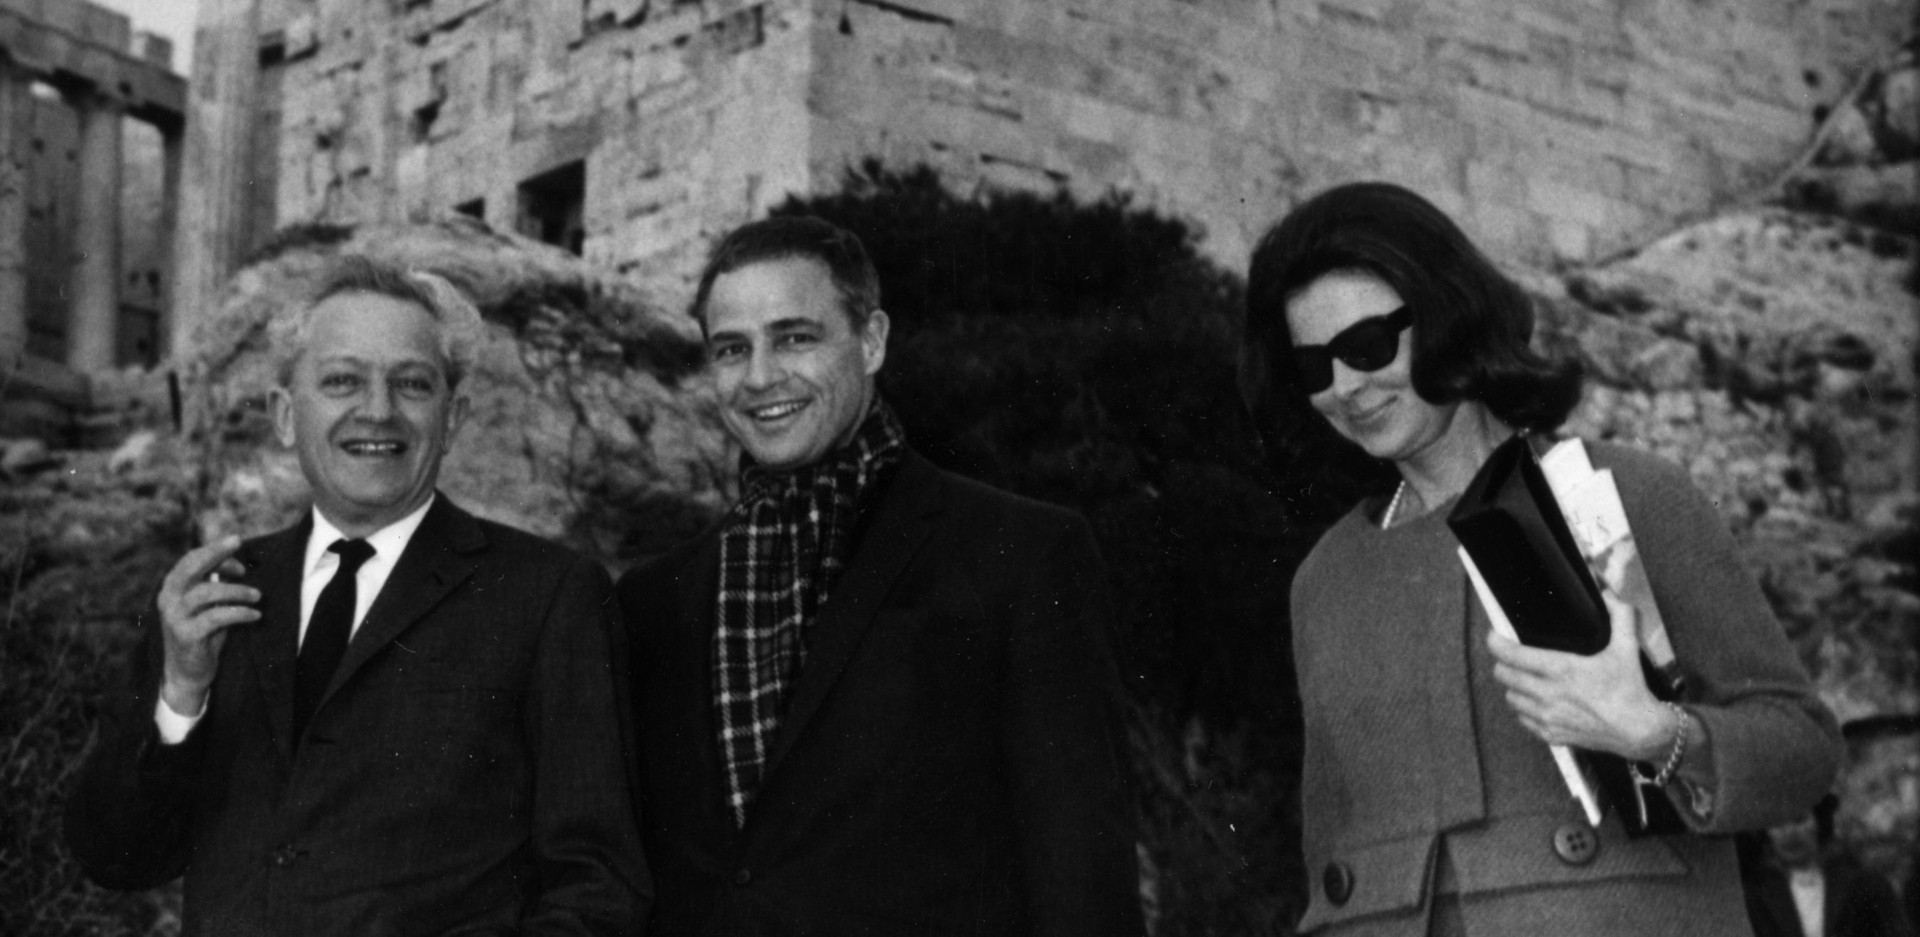 Ο Marlon Brando στην Αθήνα το 1965: Ο αμερικανός σταρ του κινηματογράφου επισκέπτεται την Ακρόπολη με τον εξόριστο τότε σκηνοθέτη του Hollywood Jules Dassin. Πίσω τους τα Προπύλαια της Ακρόπολης / (Photo by Keystone/Getty Images)